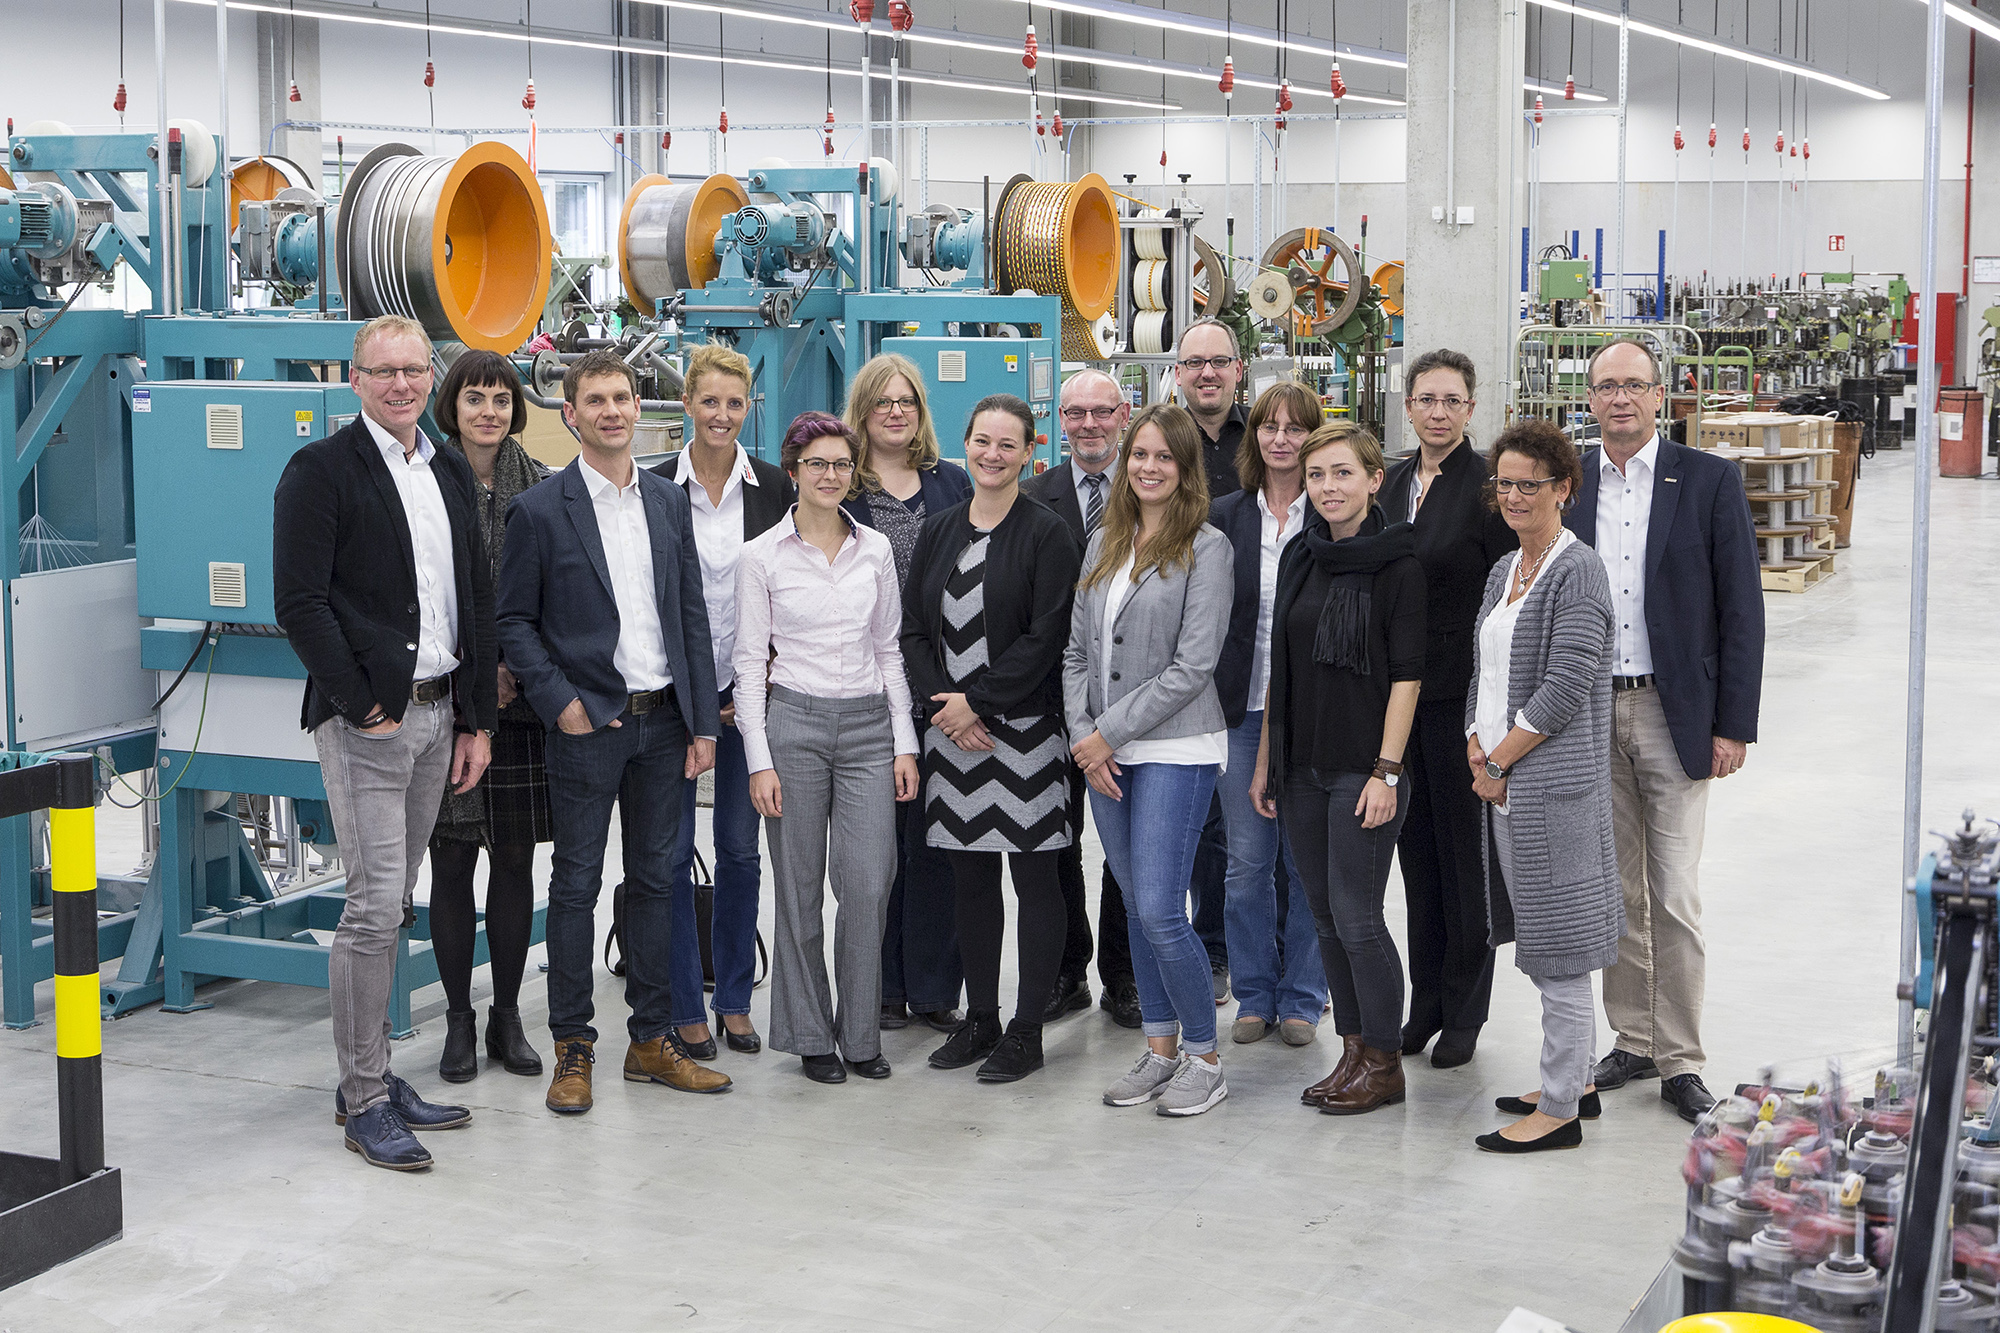 Gruppenfoto in der Produktionshalle beim Besuch des Verbundprojekts AddiTex